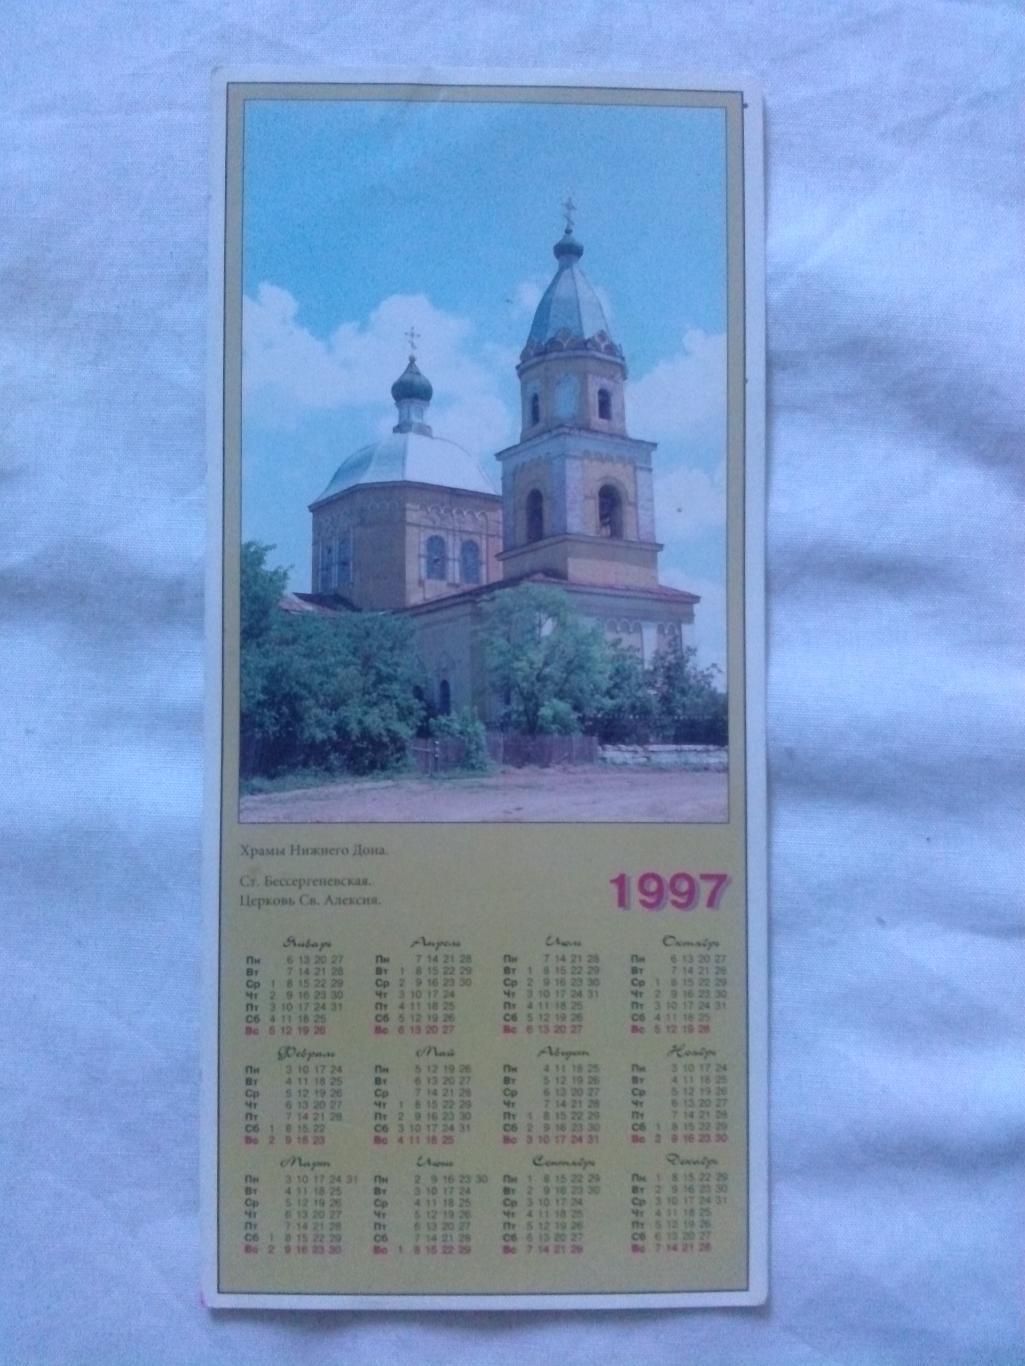 Города России : Новочеркасск 1997 г. Станица Бессергеневская Церковь Св. Алексия